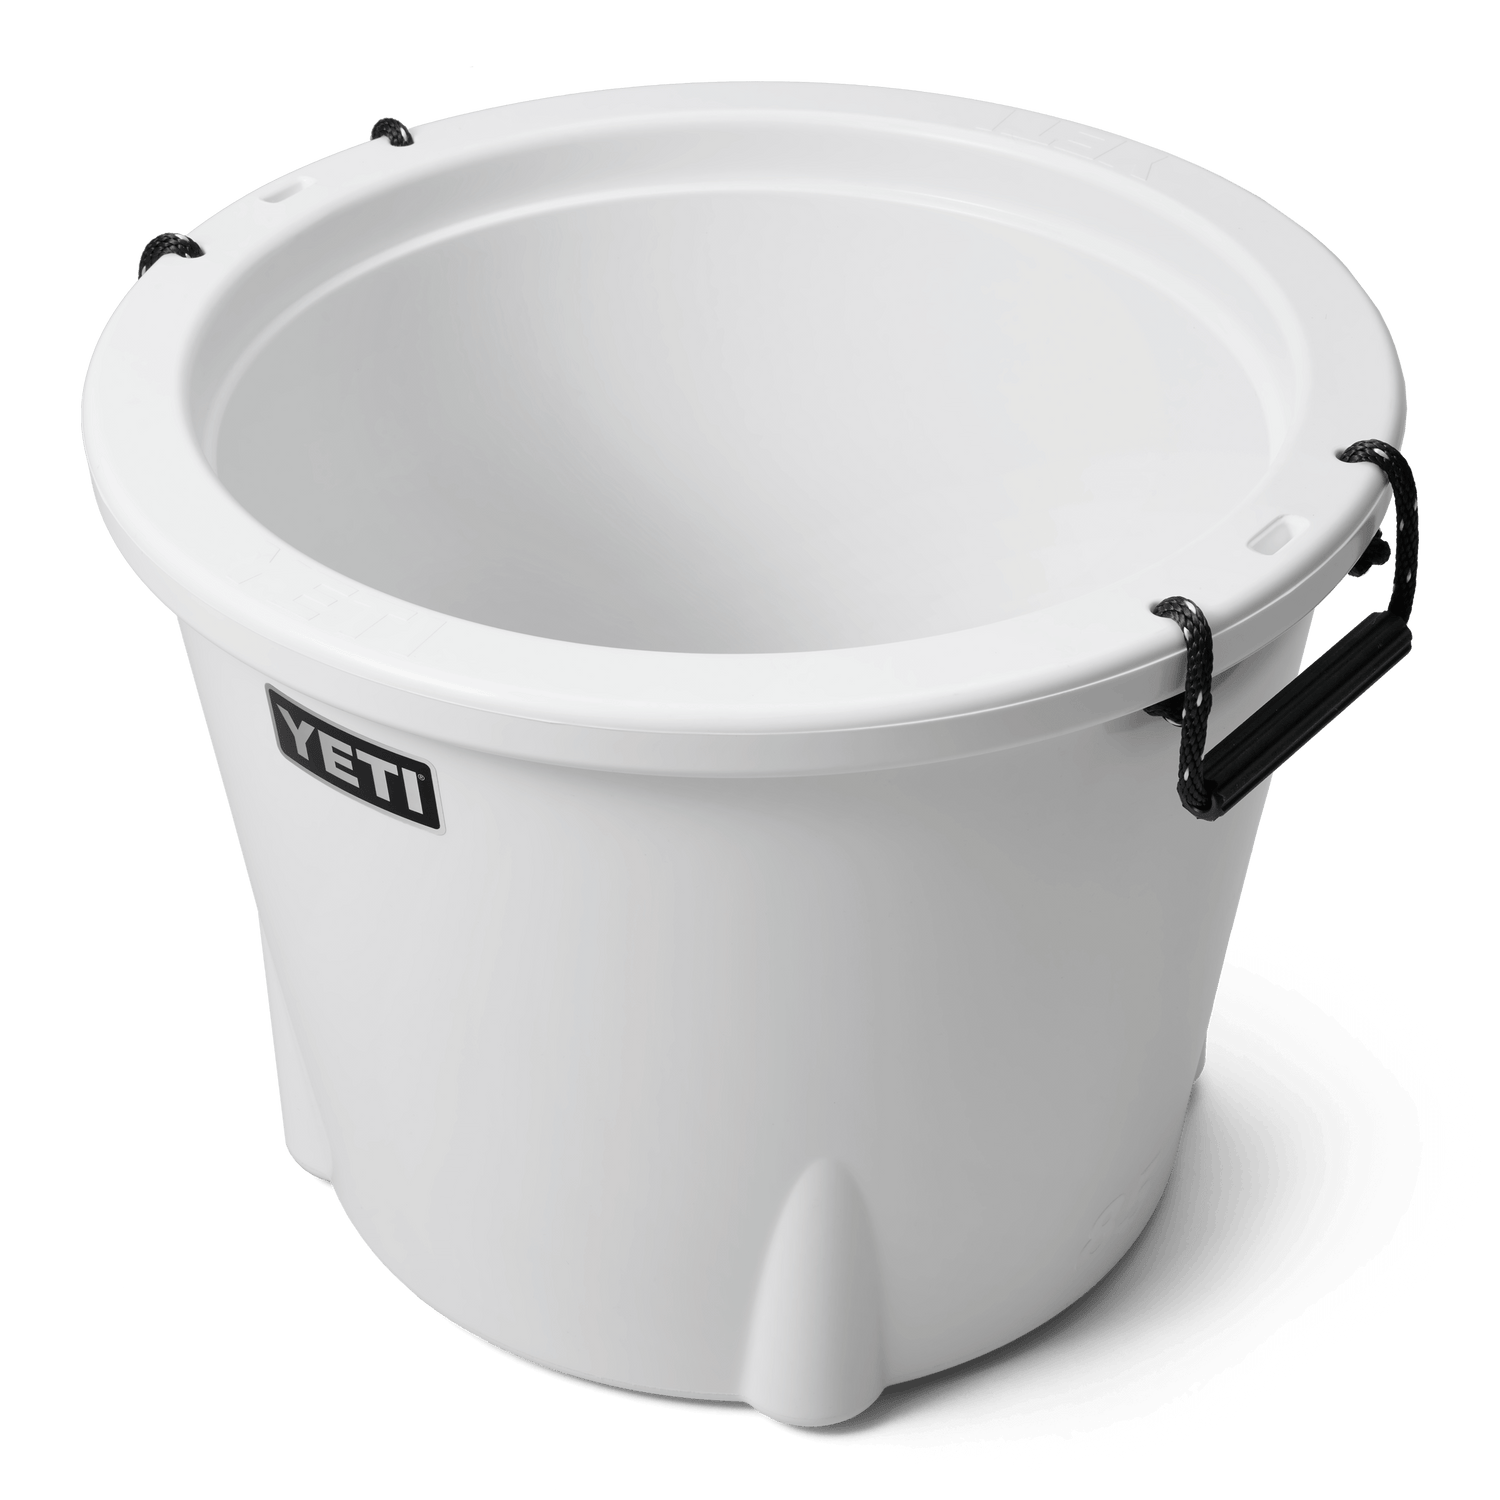 YETI YETI Tank® 45 Insulated Ice Bucket White